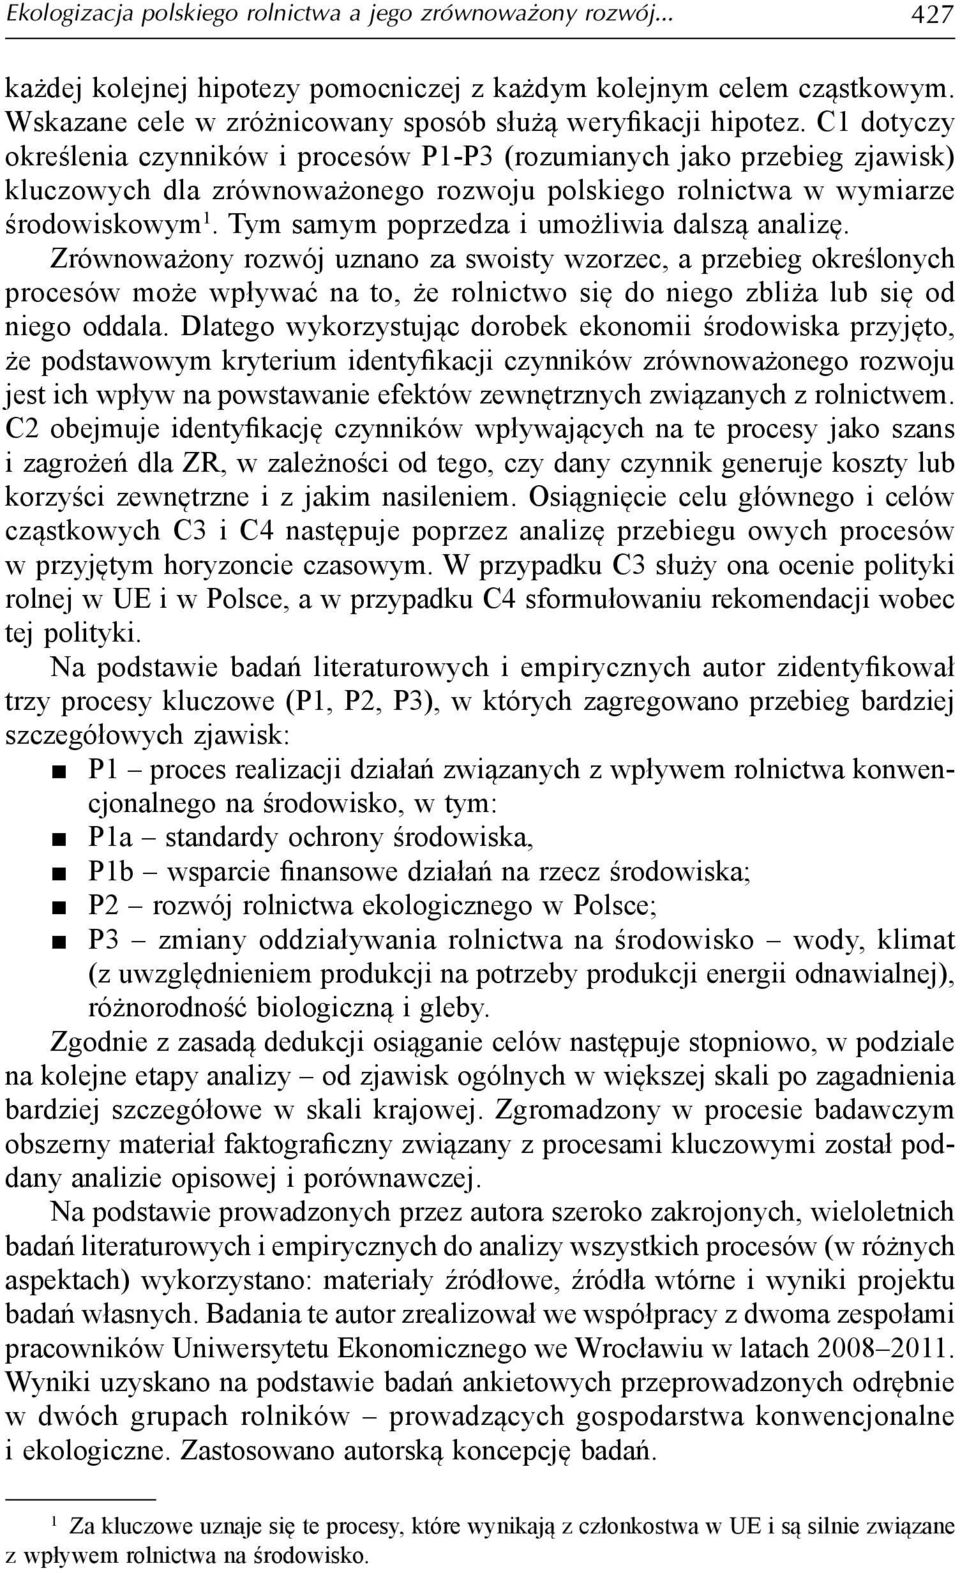 C1 dotyczy określenia czynników i procesów P1-P3 (rozumianych jako przebieg zjawisk) kluczowych dla zrównoważonego rozwoju polskiego rolnictwa w wymiarze środowiskowym 1.